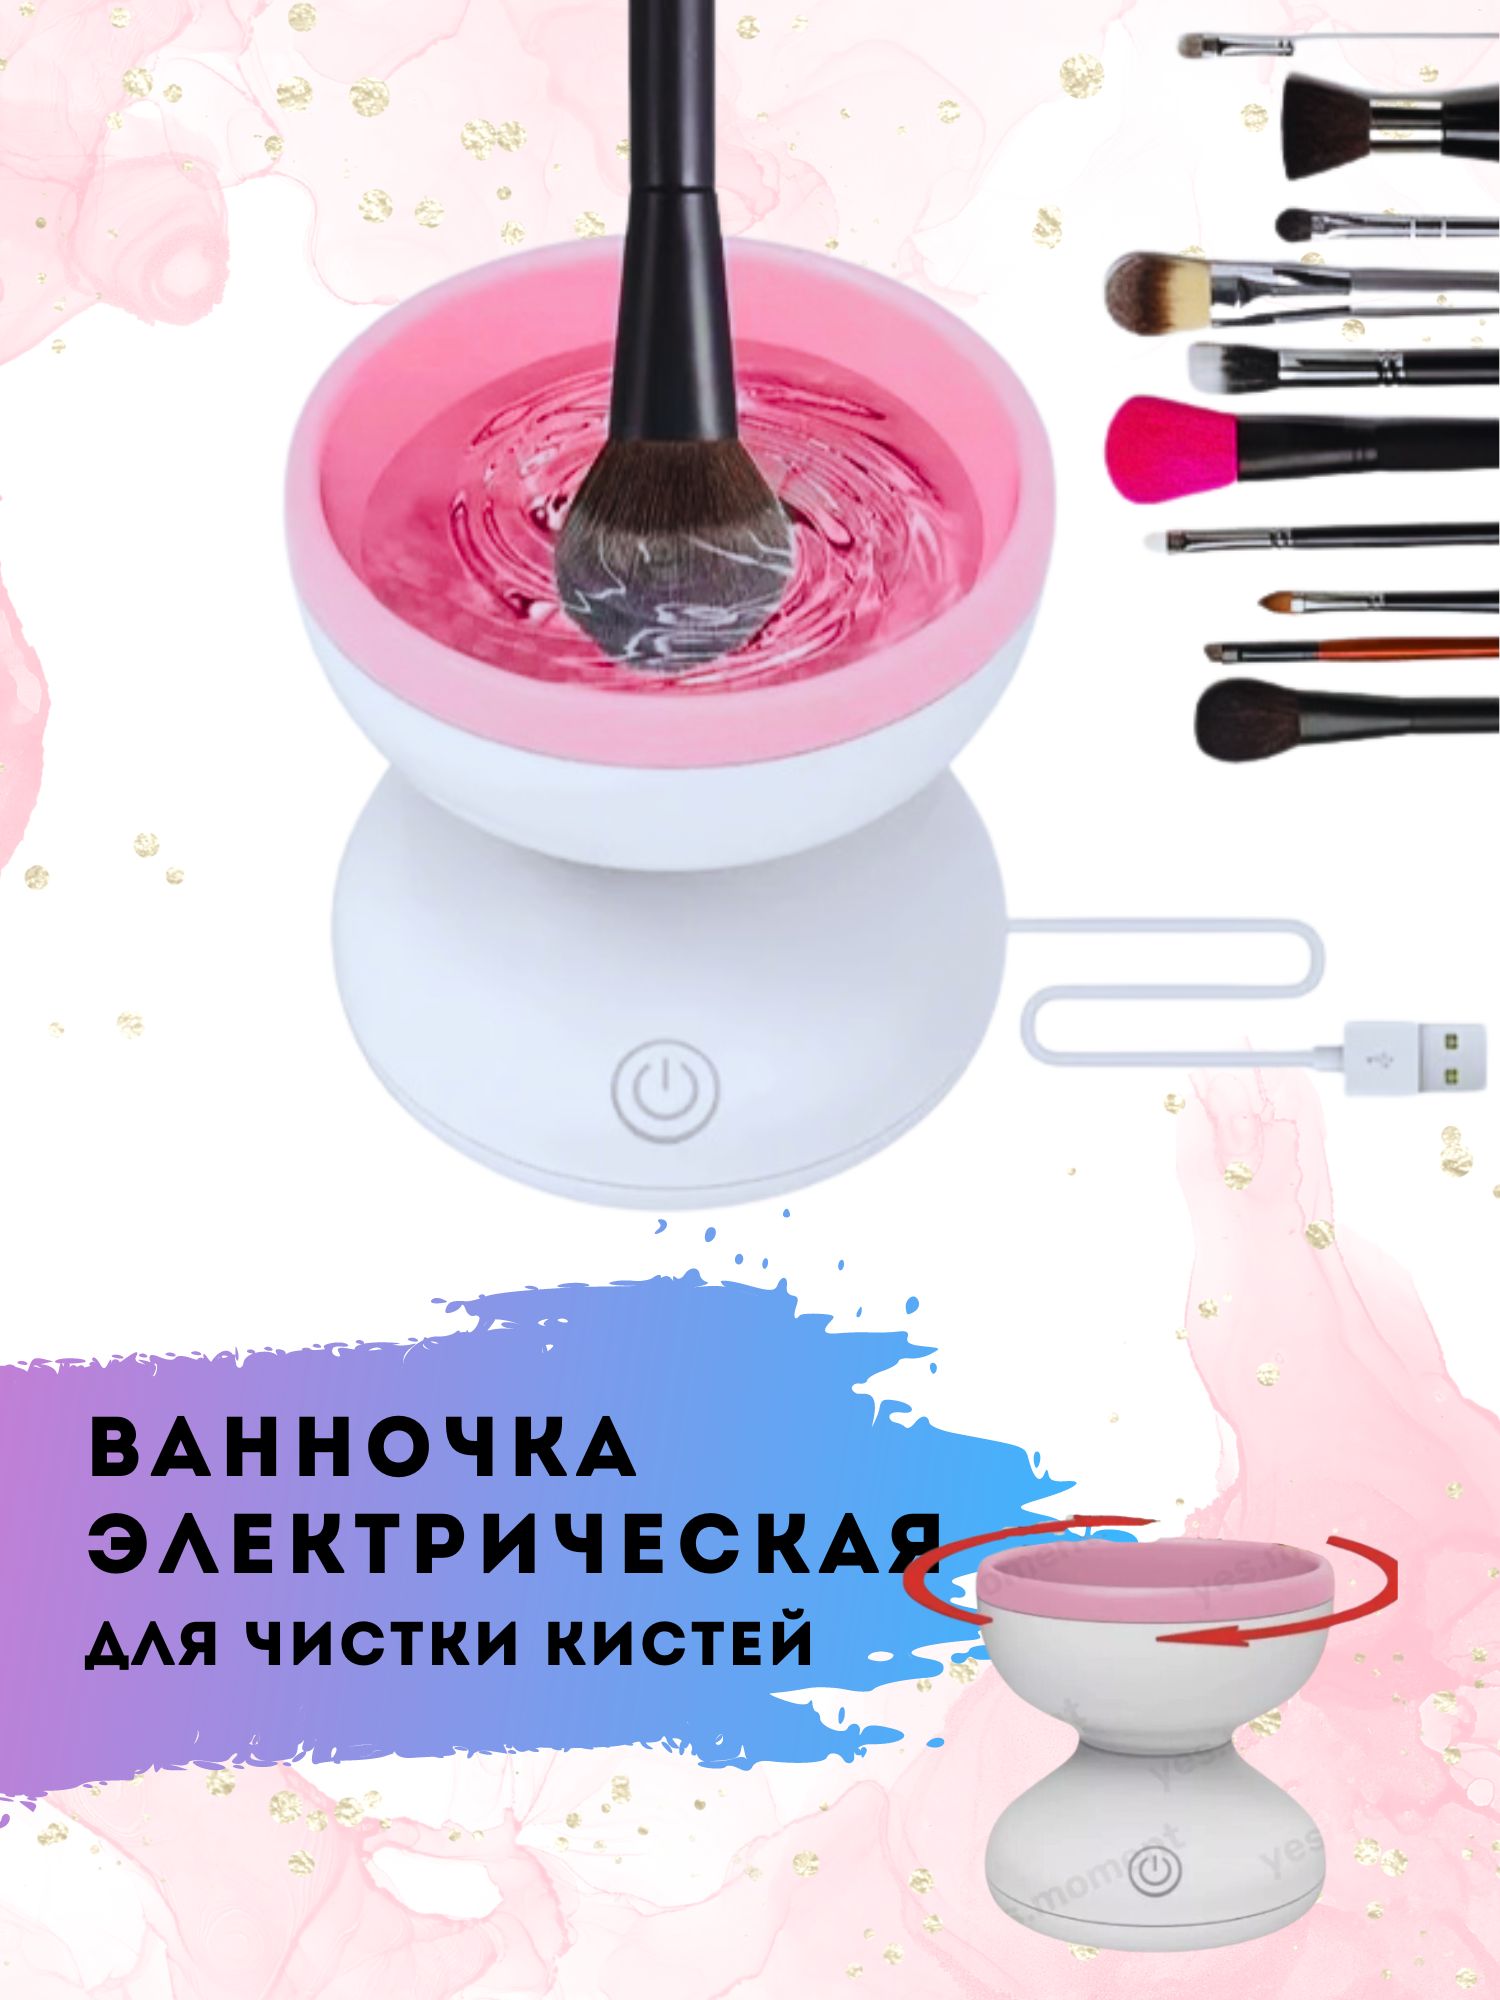 Очиститель для кистей XPX электрический розовый диаметр 8.8 см складная ванночка коврик lolocandy для мытья очистки кистей спонжей